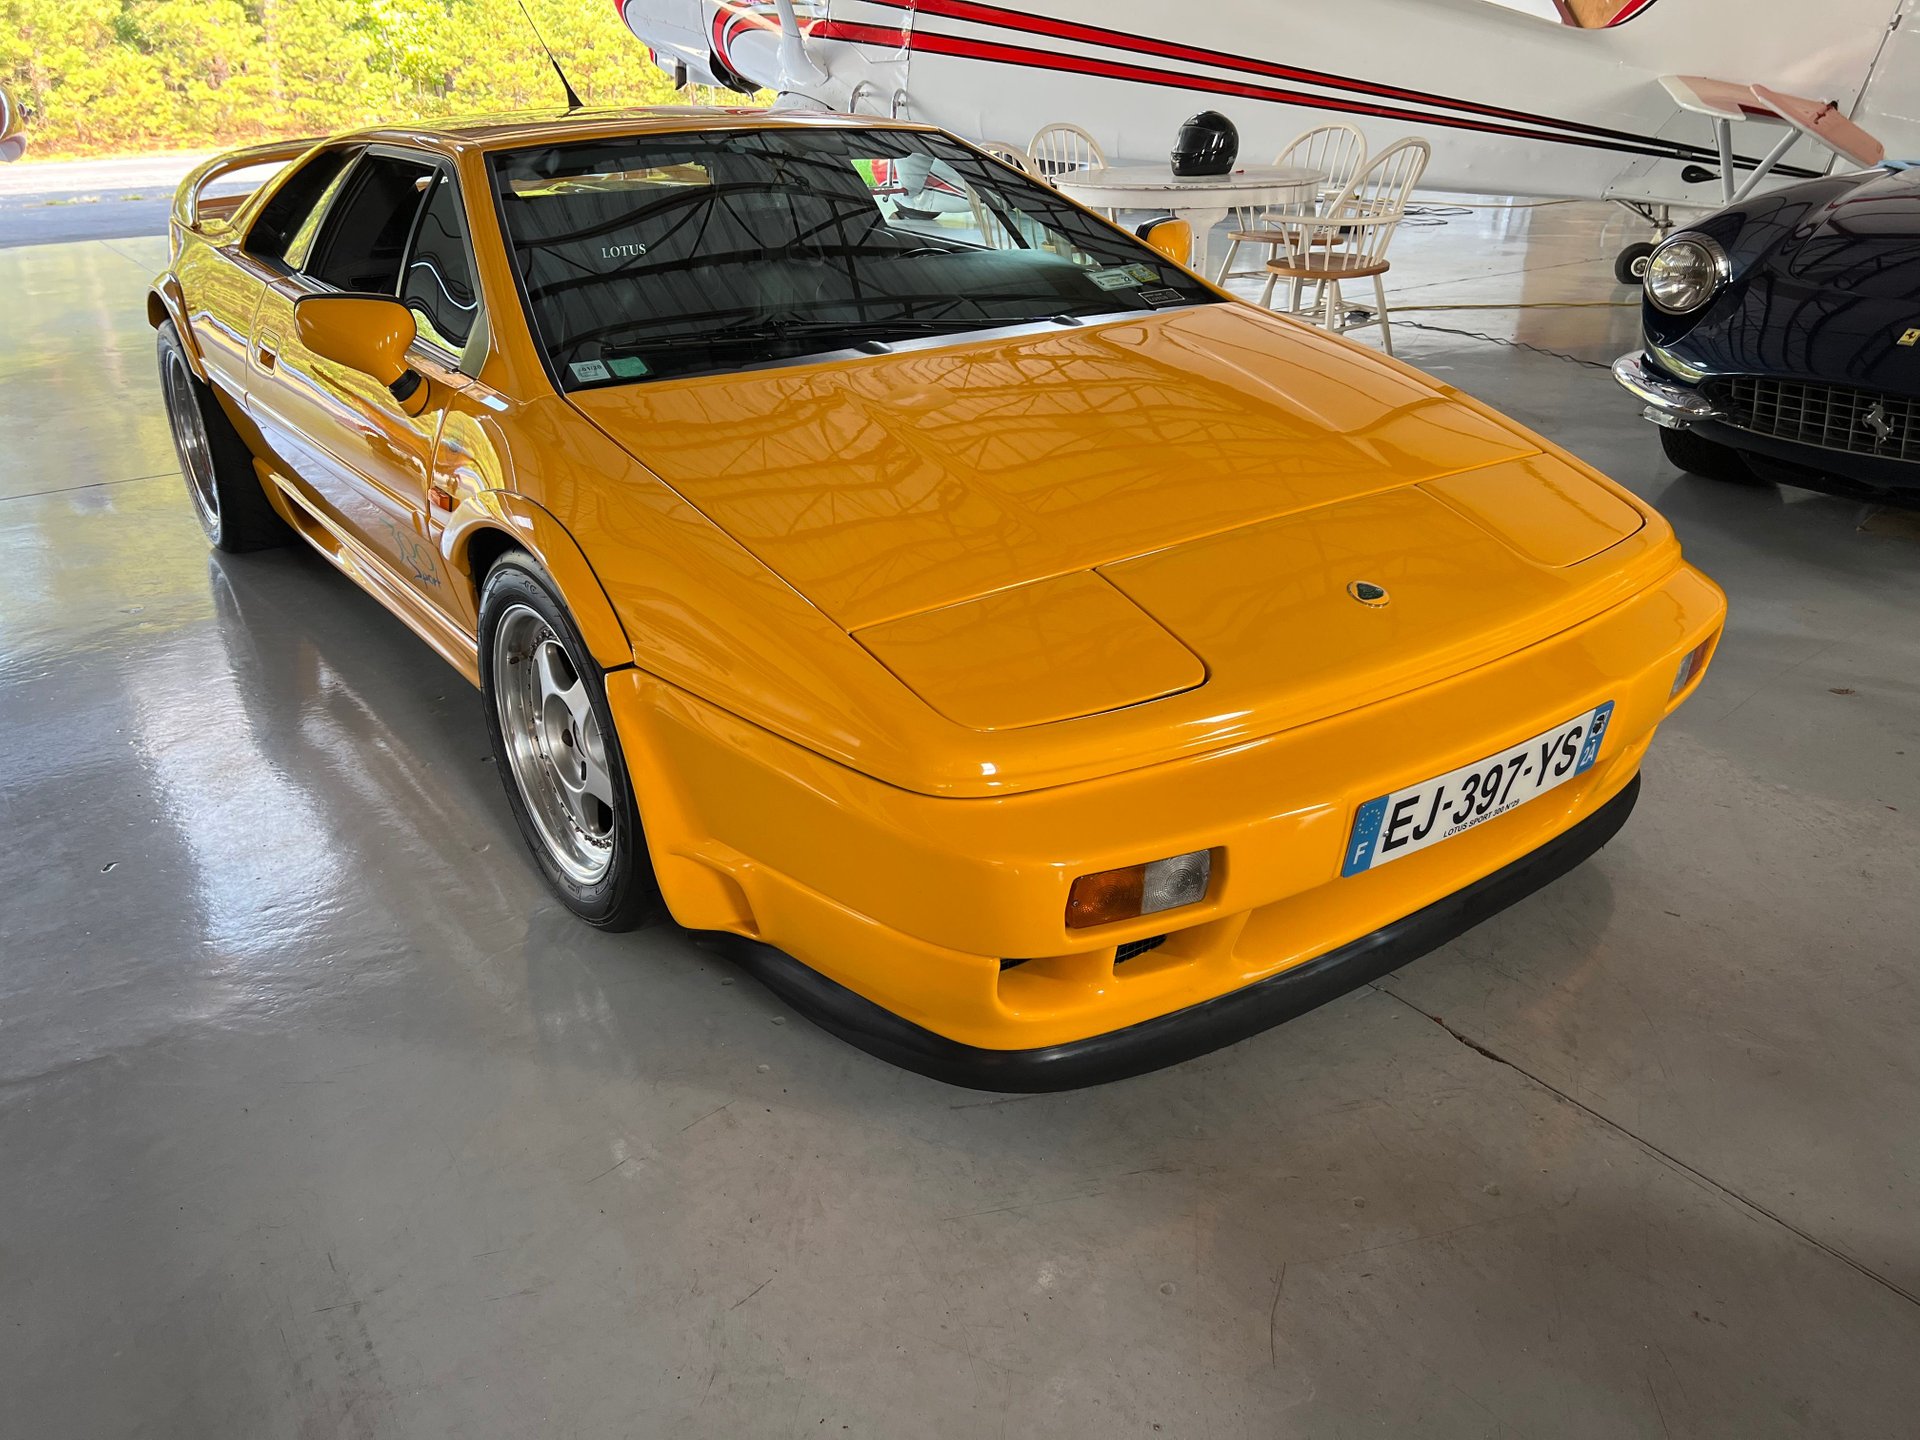 1994 Lotus Esprit Sport 300 | Autosport Designs, Inc. | Exotic, Vintage,  and Classic Car Sales